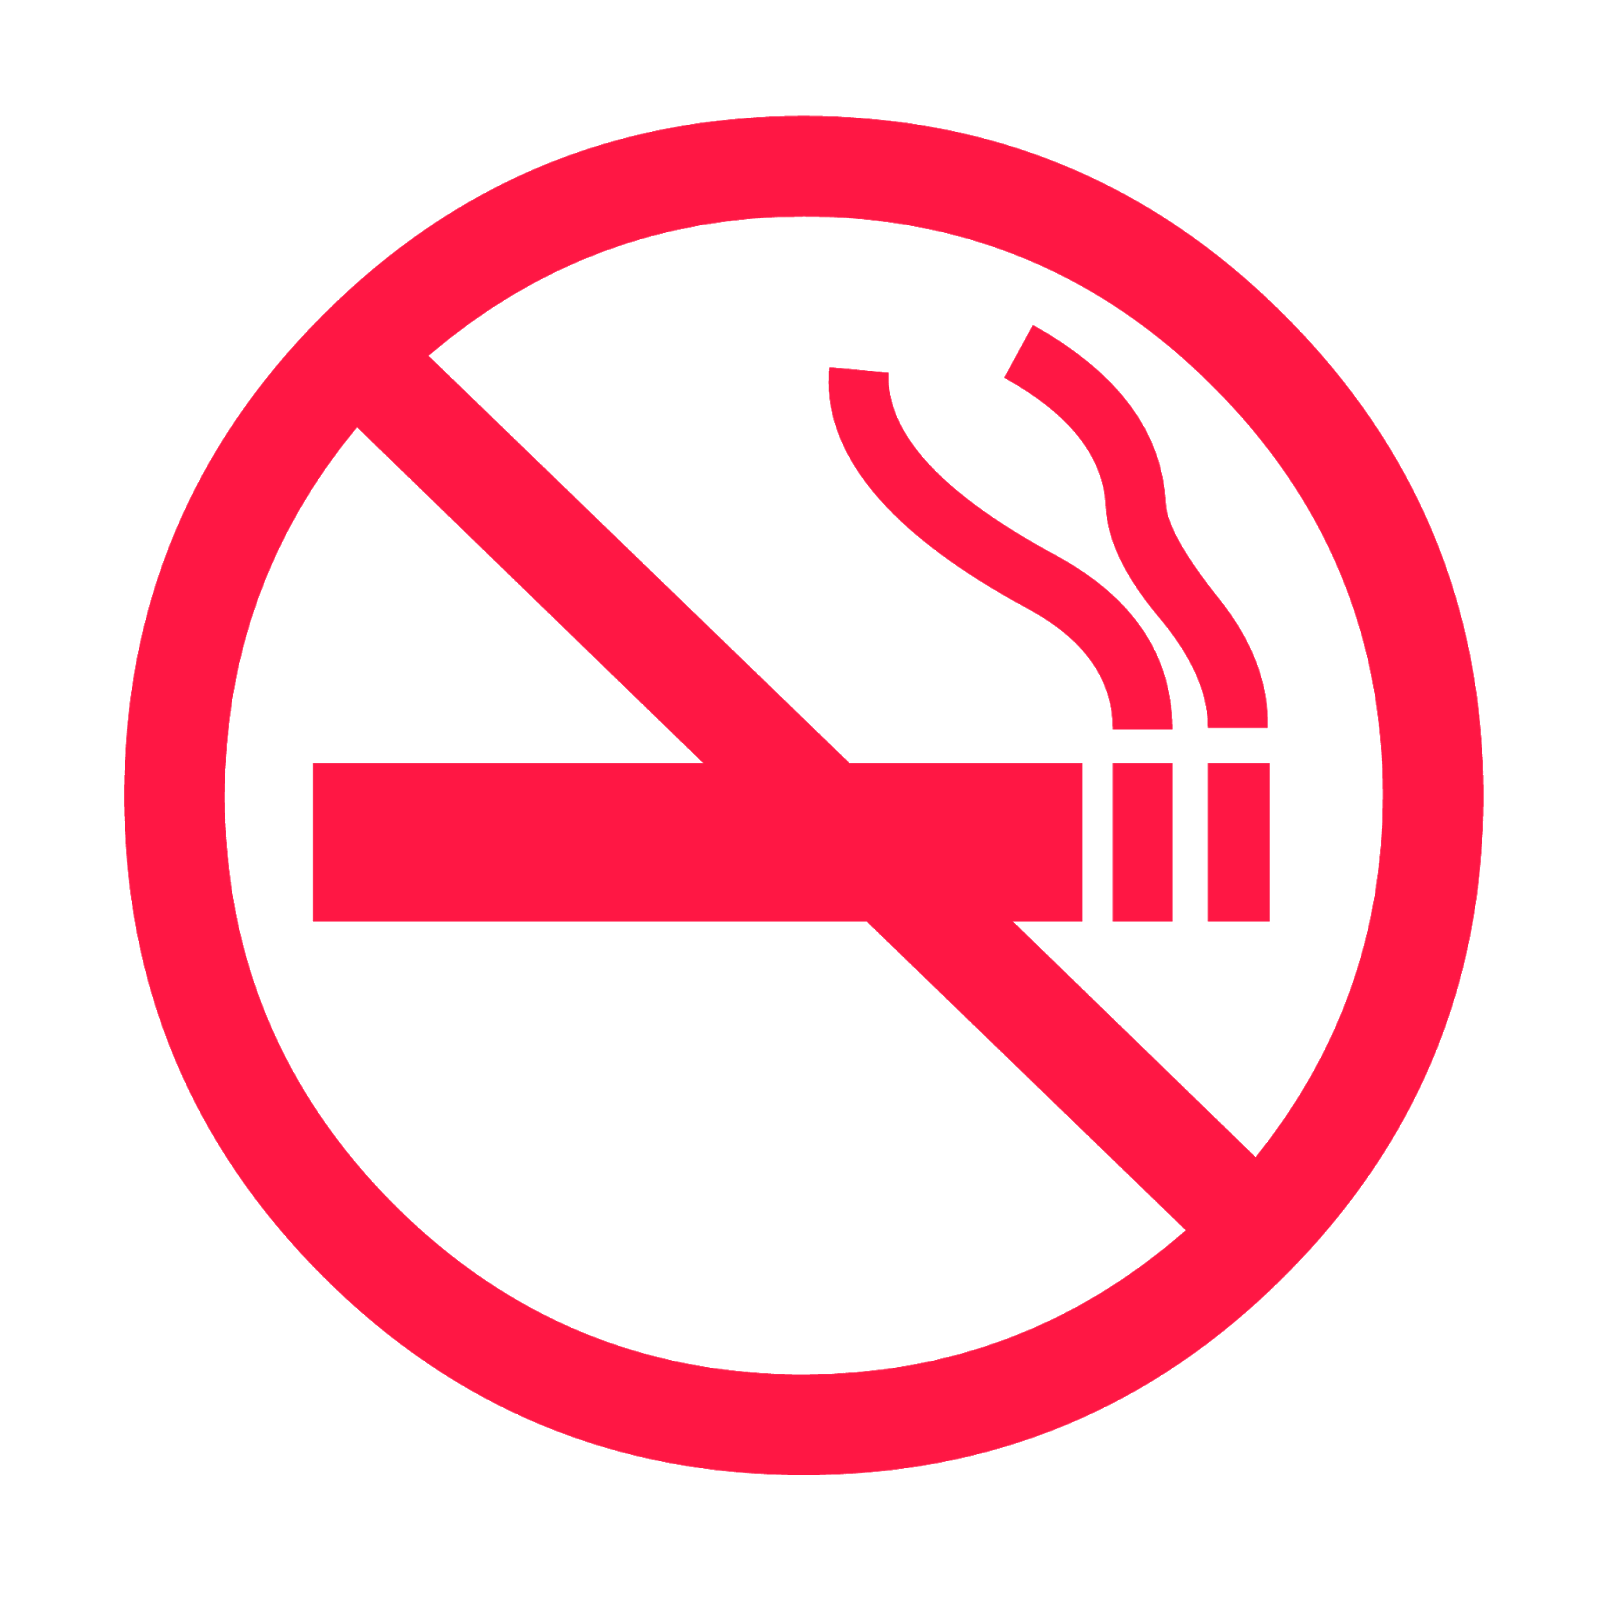 صورة ممنوع التدخين لا للتدخين صور ممنوع التدخين الصور